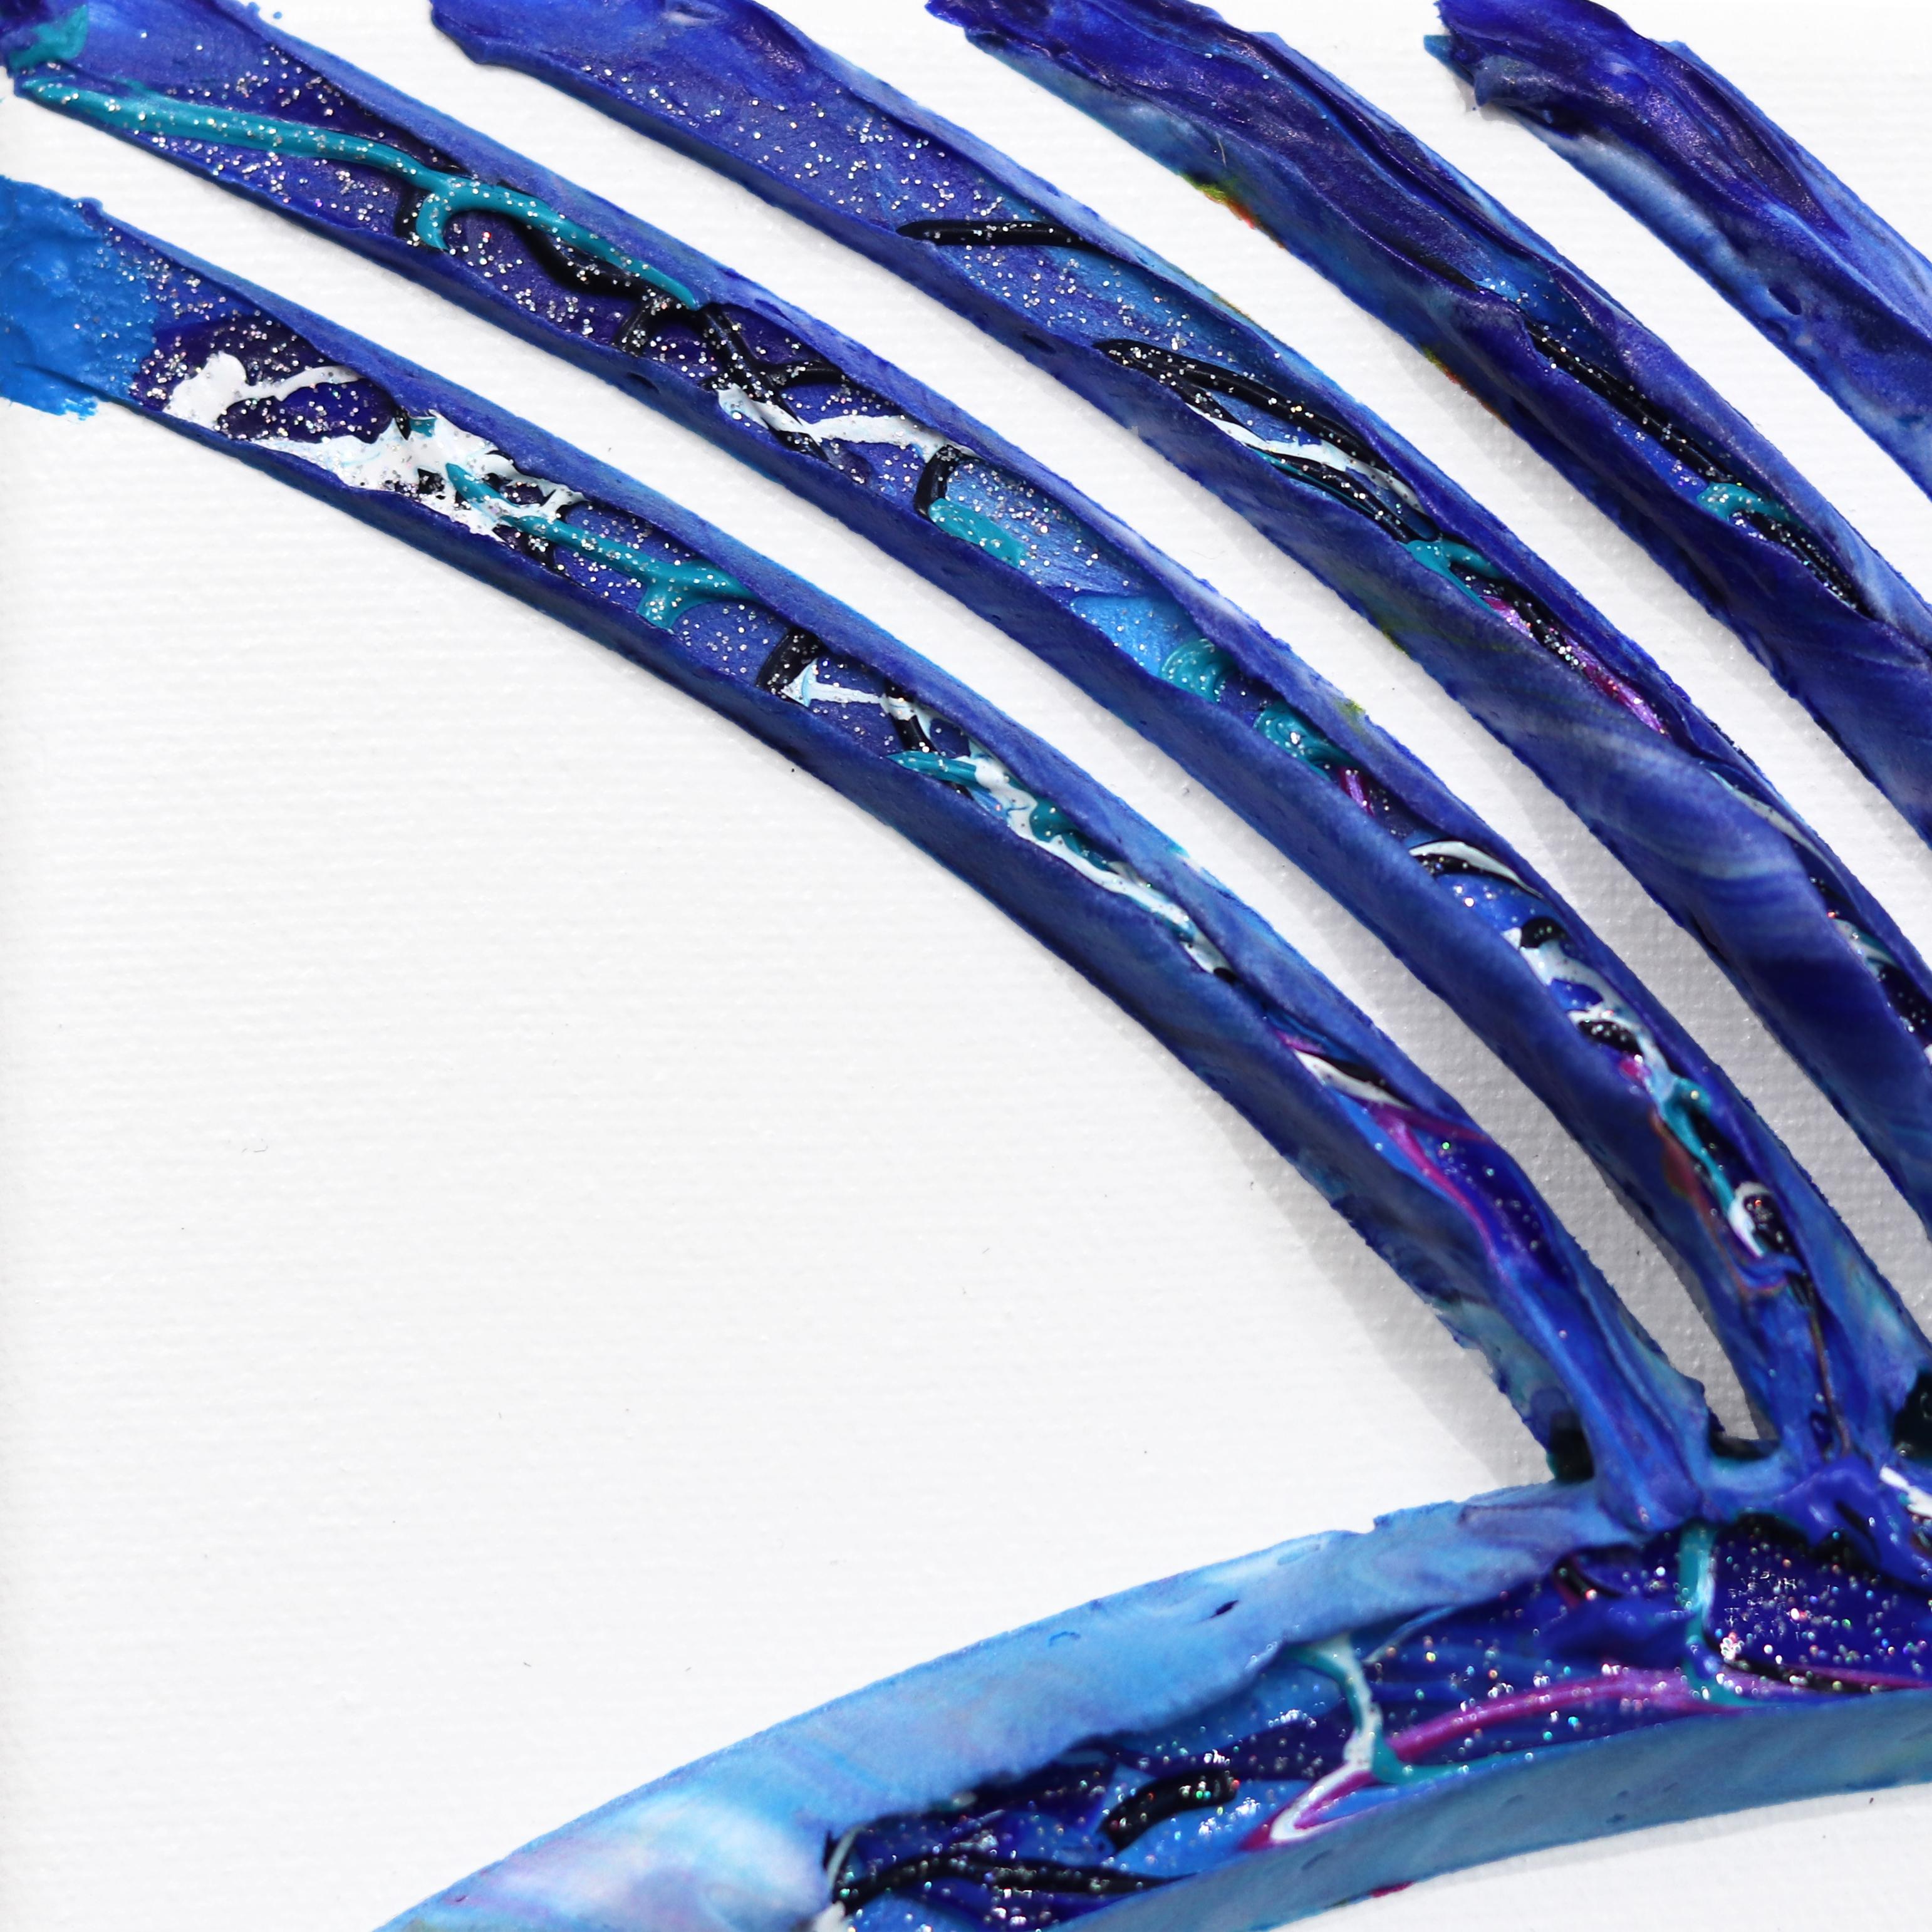 The Poetry of Life - Minimalistisches abstraktes 3D-Gemälde in Textur in Blau (Pop-Art), Painting, von Virginie Schroeder